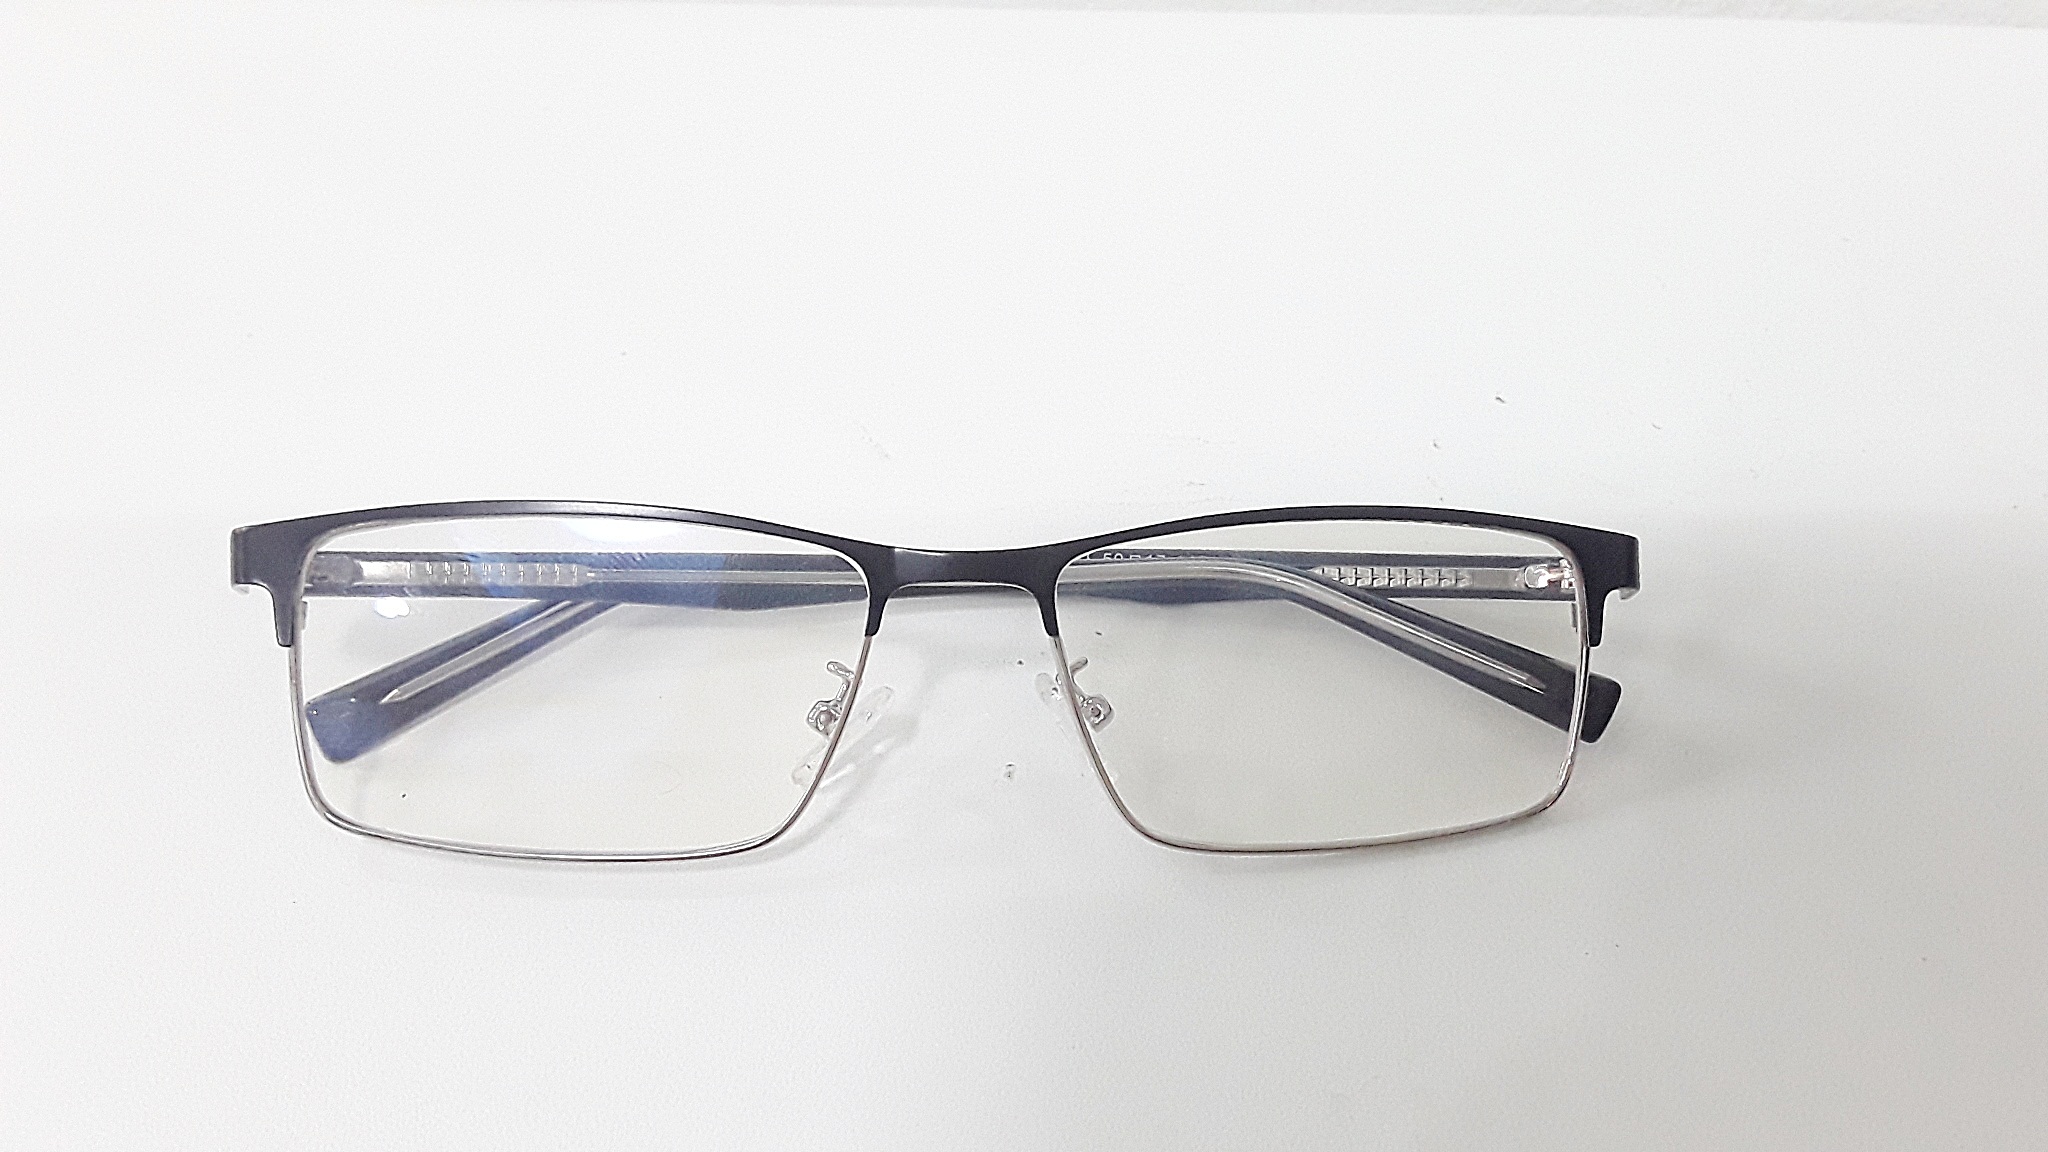 แว่นสายตายาว แว่นอ่านหนังสือ แว่นตา แว่นสายตา ตัดแว่น กรอบพร้อมเลนส์ตัด เลนส์มัลติโค้ตบลู แว่นตัดแท้ กรองแสง คอม มือถือ 1921 ดำเงิน